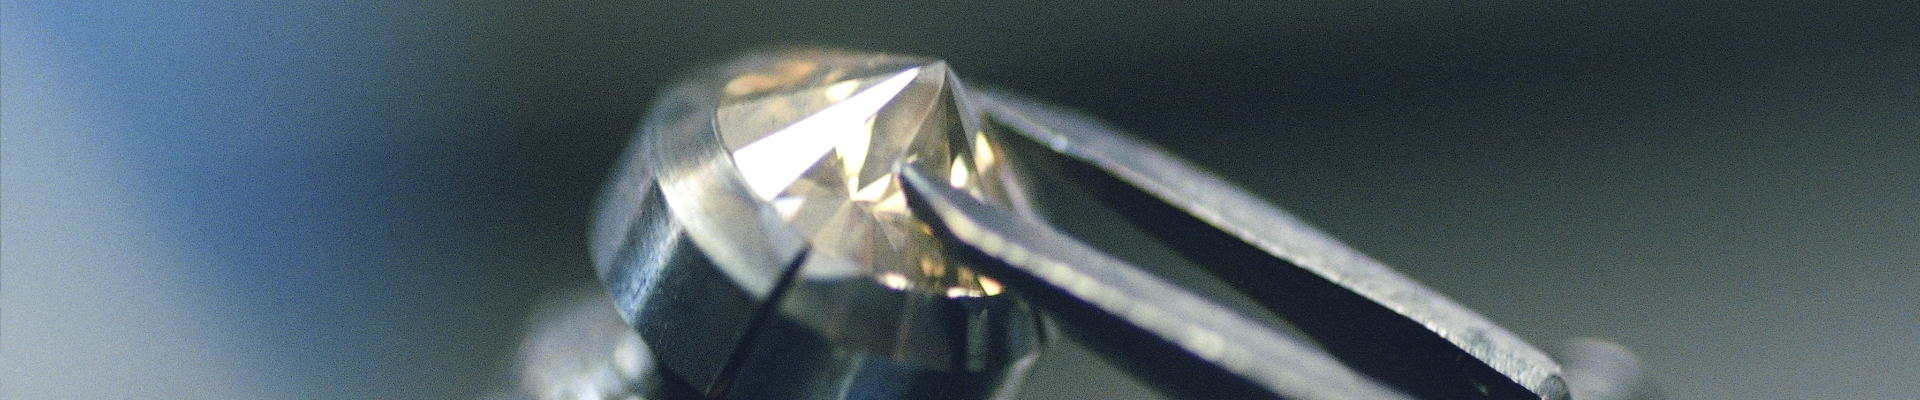 DIAMONDAS Anlagediamant wird geschliffen